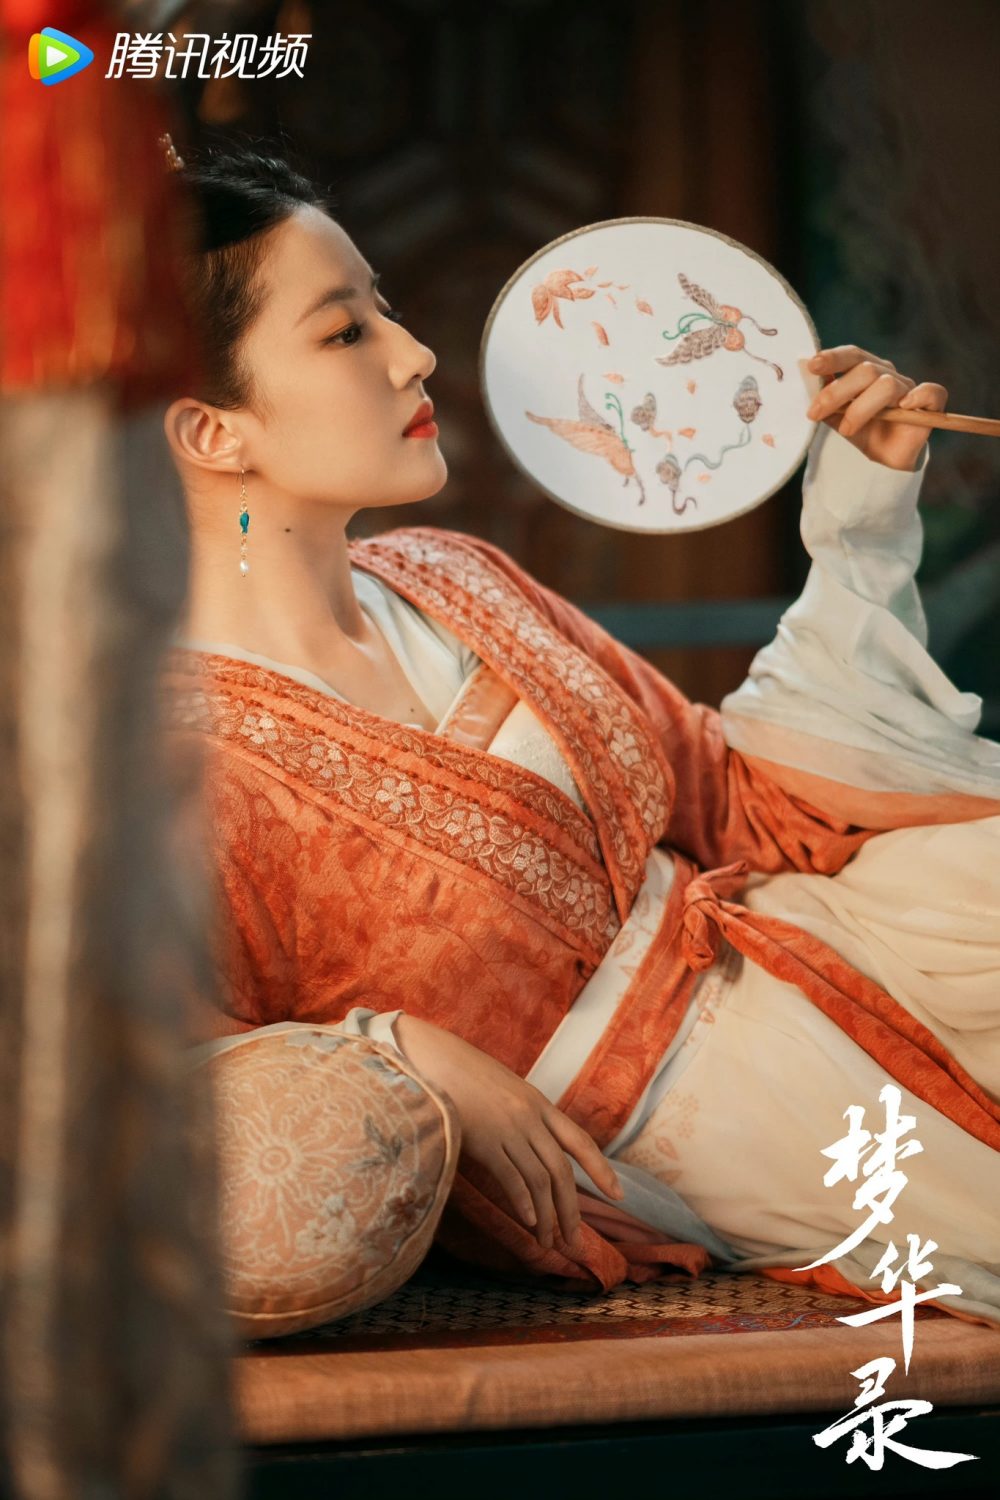 Bộ phim làm Lưu Diệc Phi vướng phốt 'thái độ', vợ Trần Hiểu nổi cơn ghen khiến cuộc sống hôn nhân lao đao - Ảnh 3.